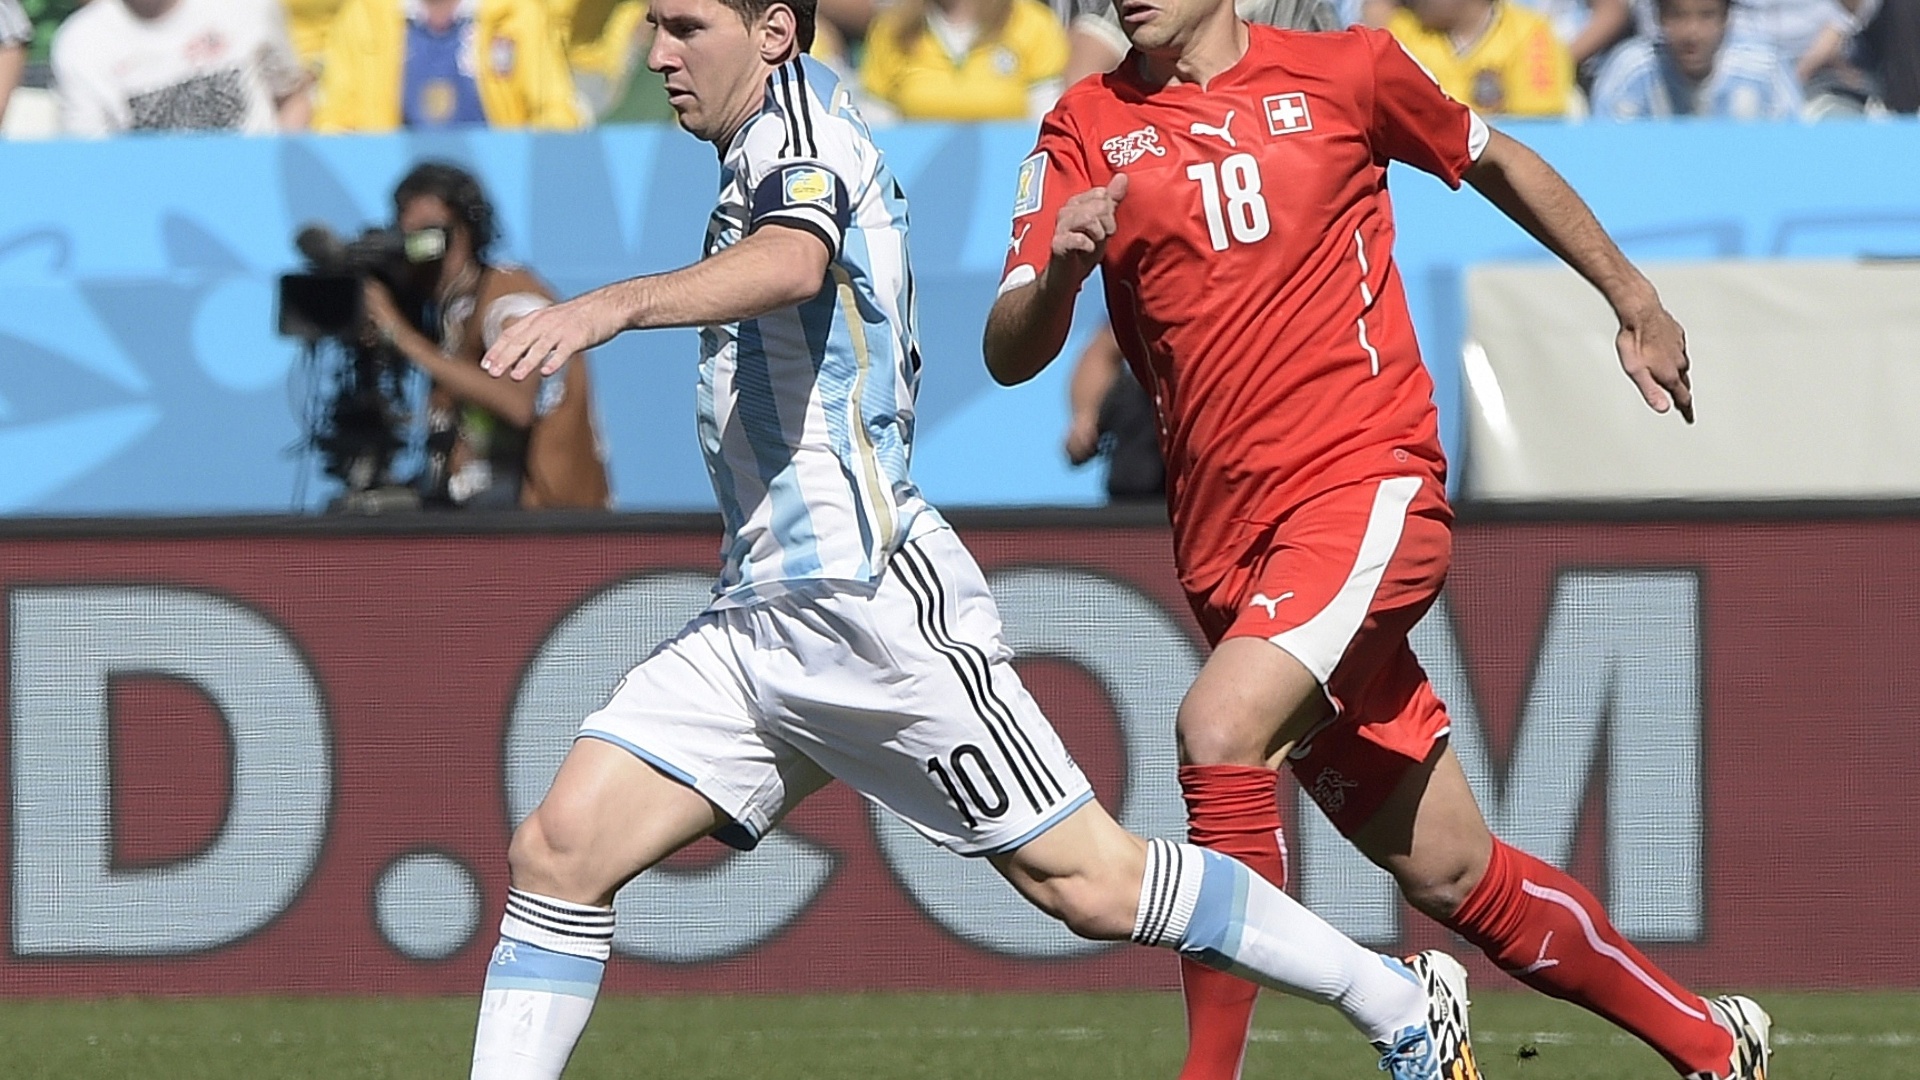 01.jul.2014 - Lionel Messi carrega a bola e tenta partir para o ataque no começo de jogo entre Argentina e Suíça, no Itaquerão